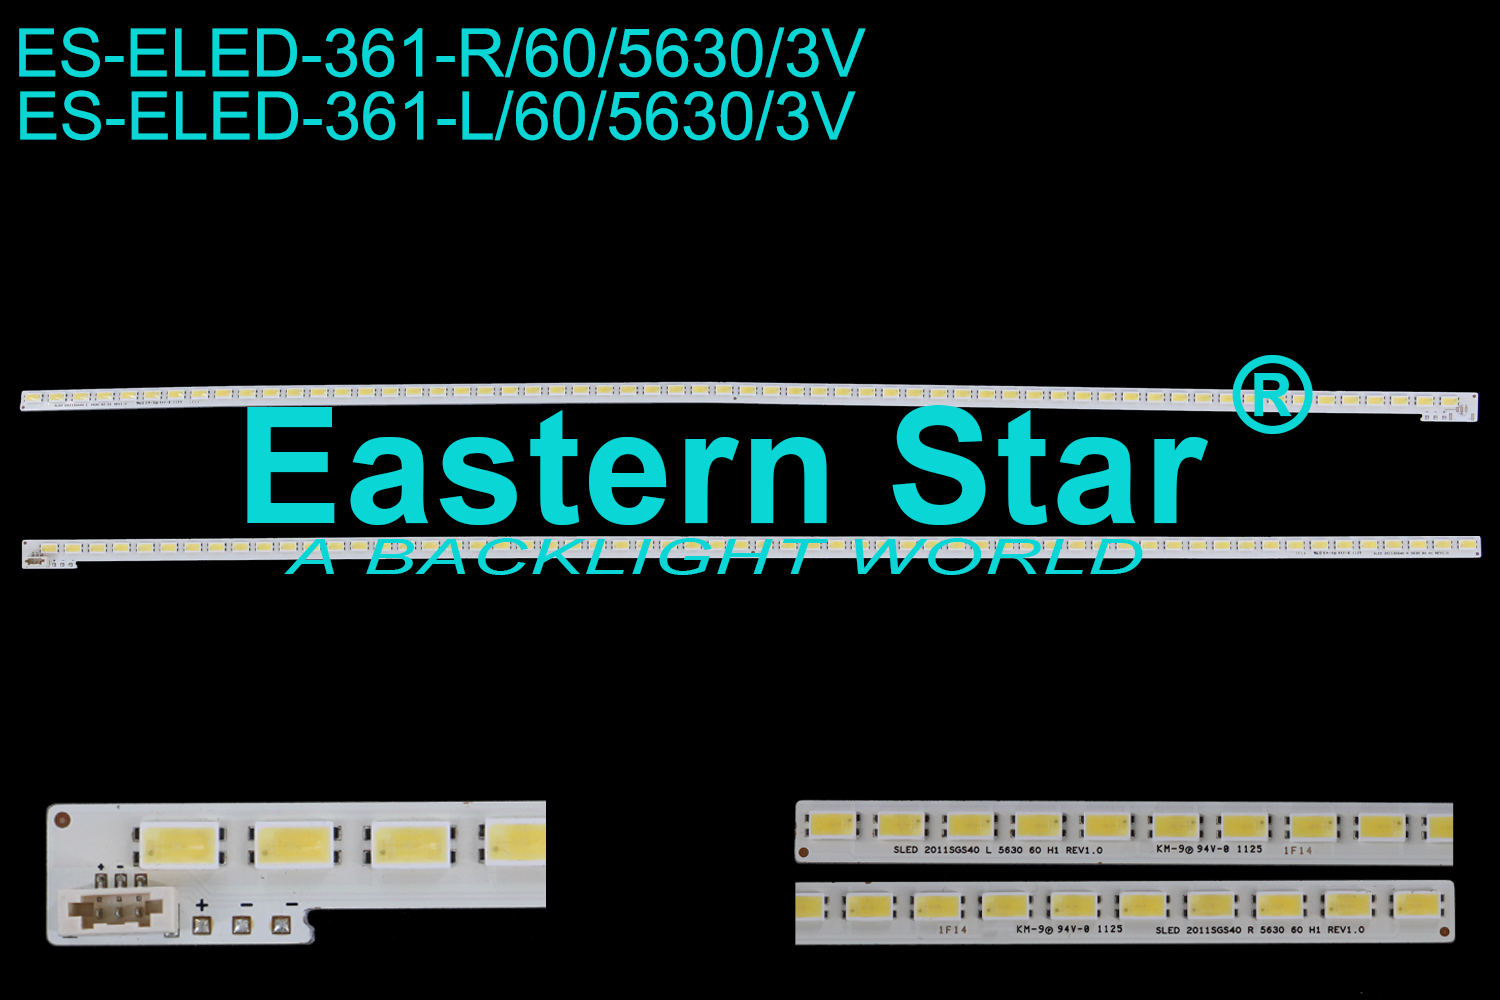 ES-ELED-361 ELED/EDGE TV backlight use for 40'' Toshiba 40RL838，40TL838 SLED 2011SGS40 L 5630 60 H1 REV1.0 SLED 2011SGS40 R 5630 60 H1 REV1.0 LED STRIPS(2)